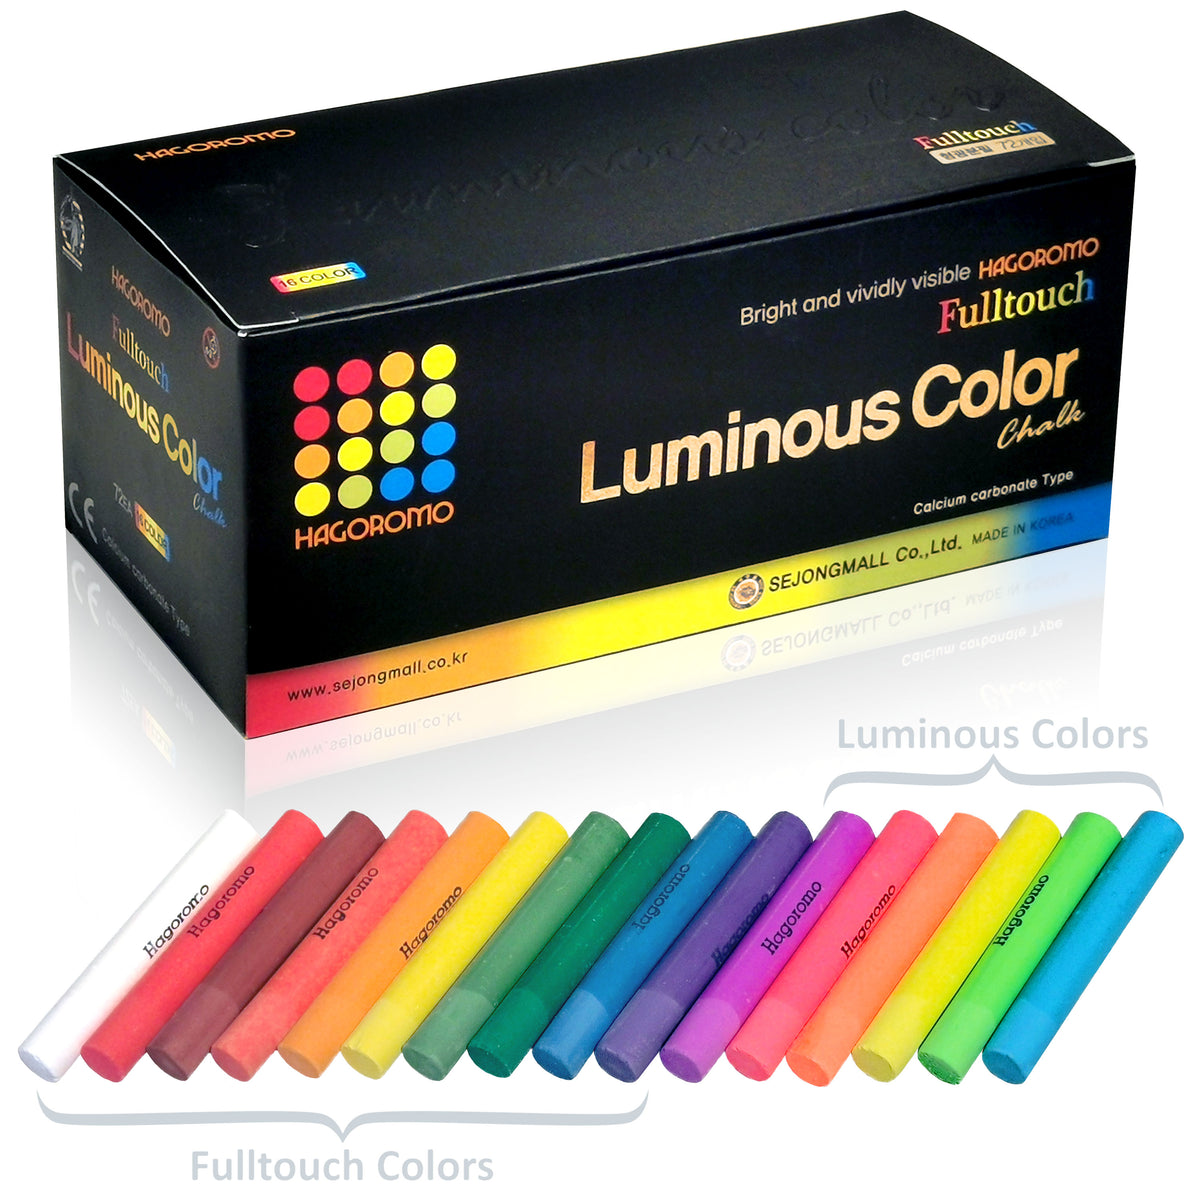  Hagoromo Fulltouch Color Chalk 1 Box [72 Pcs/10 Color Mix] :  Tools & Home Improvement